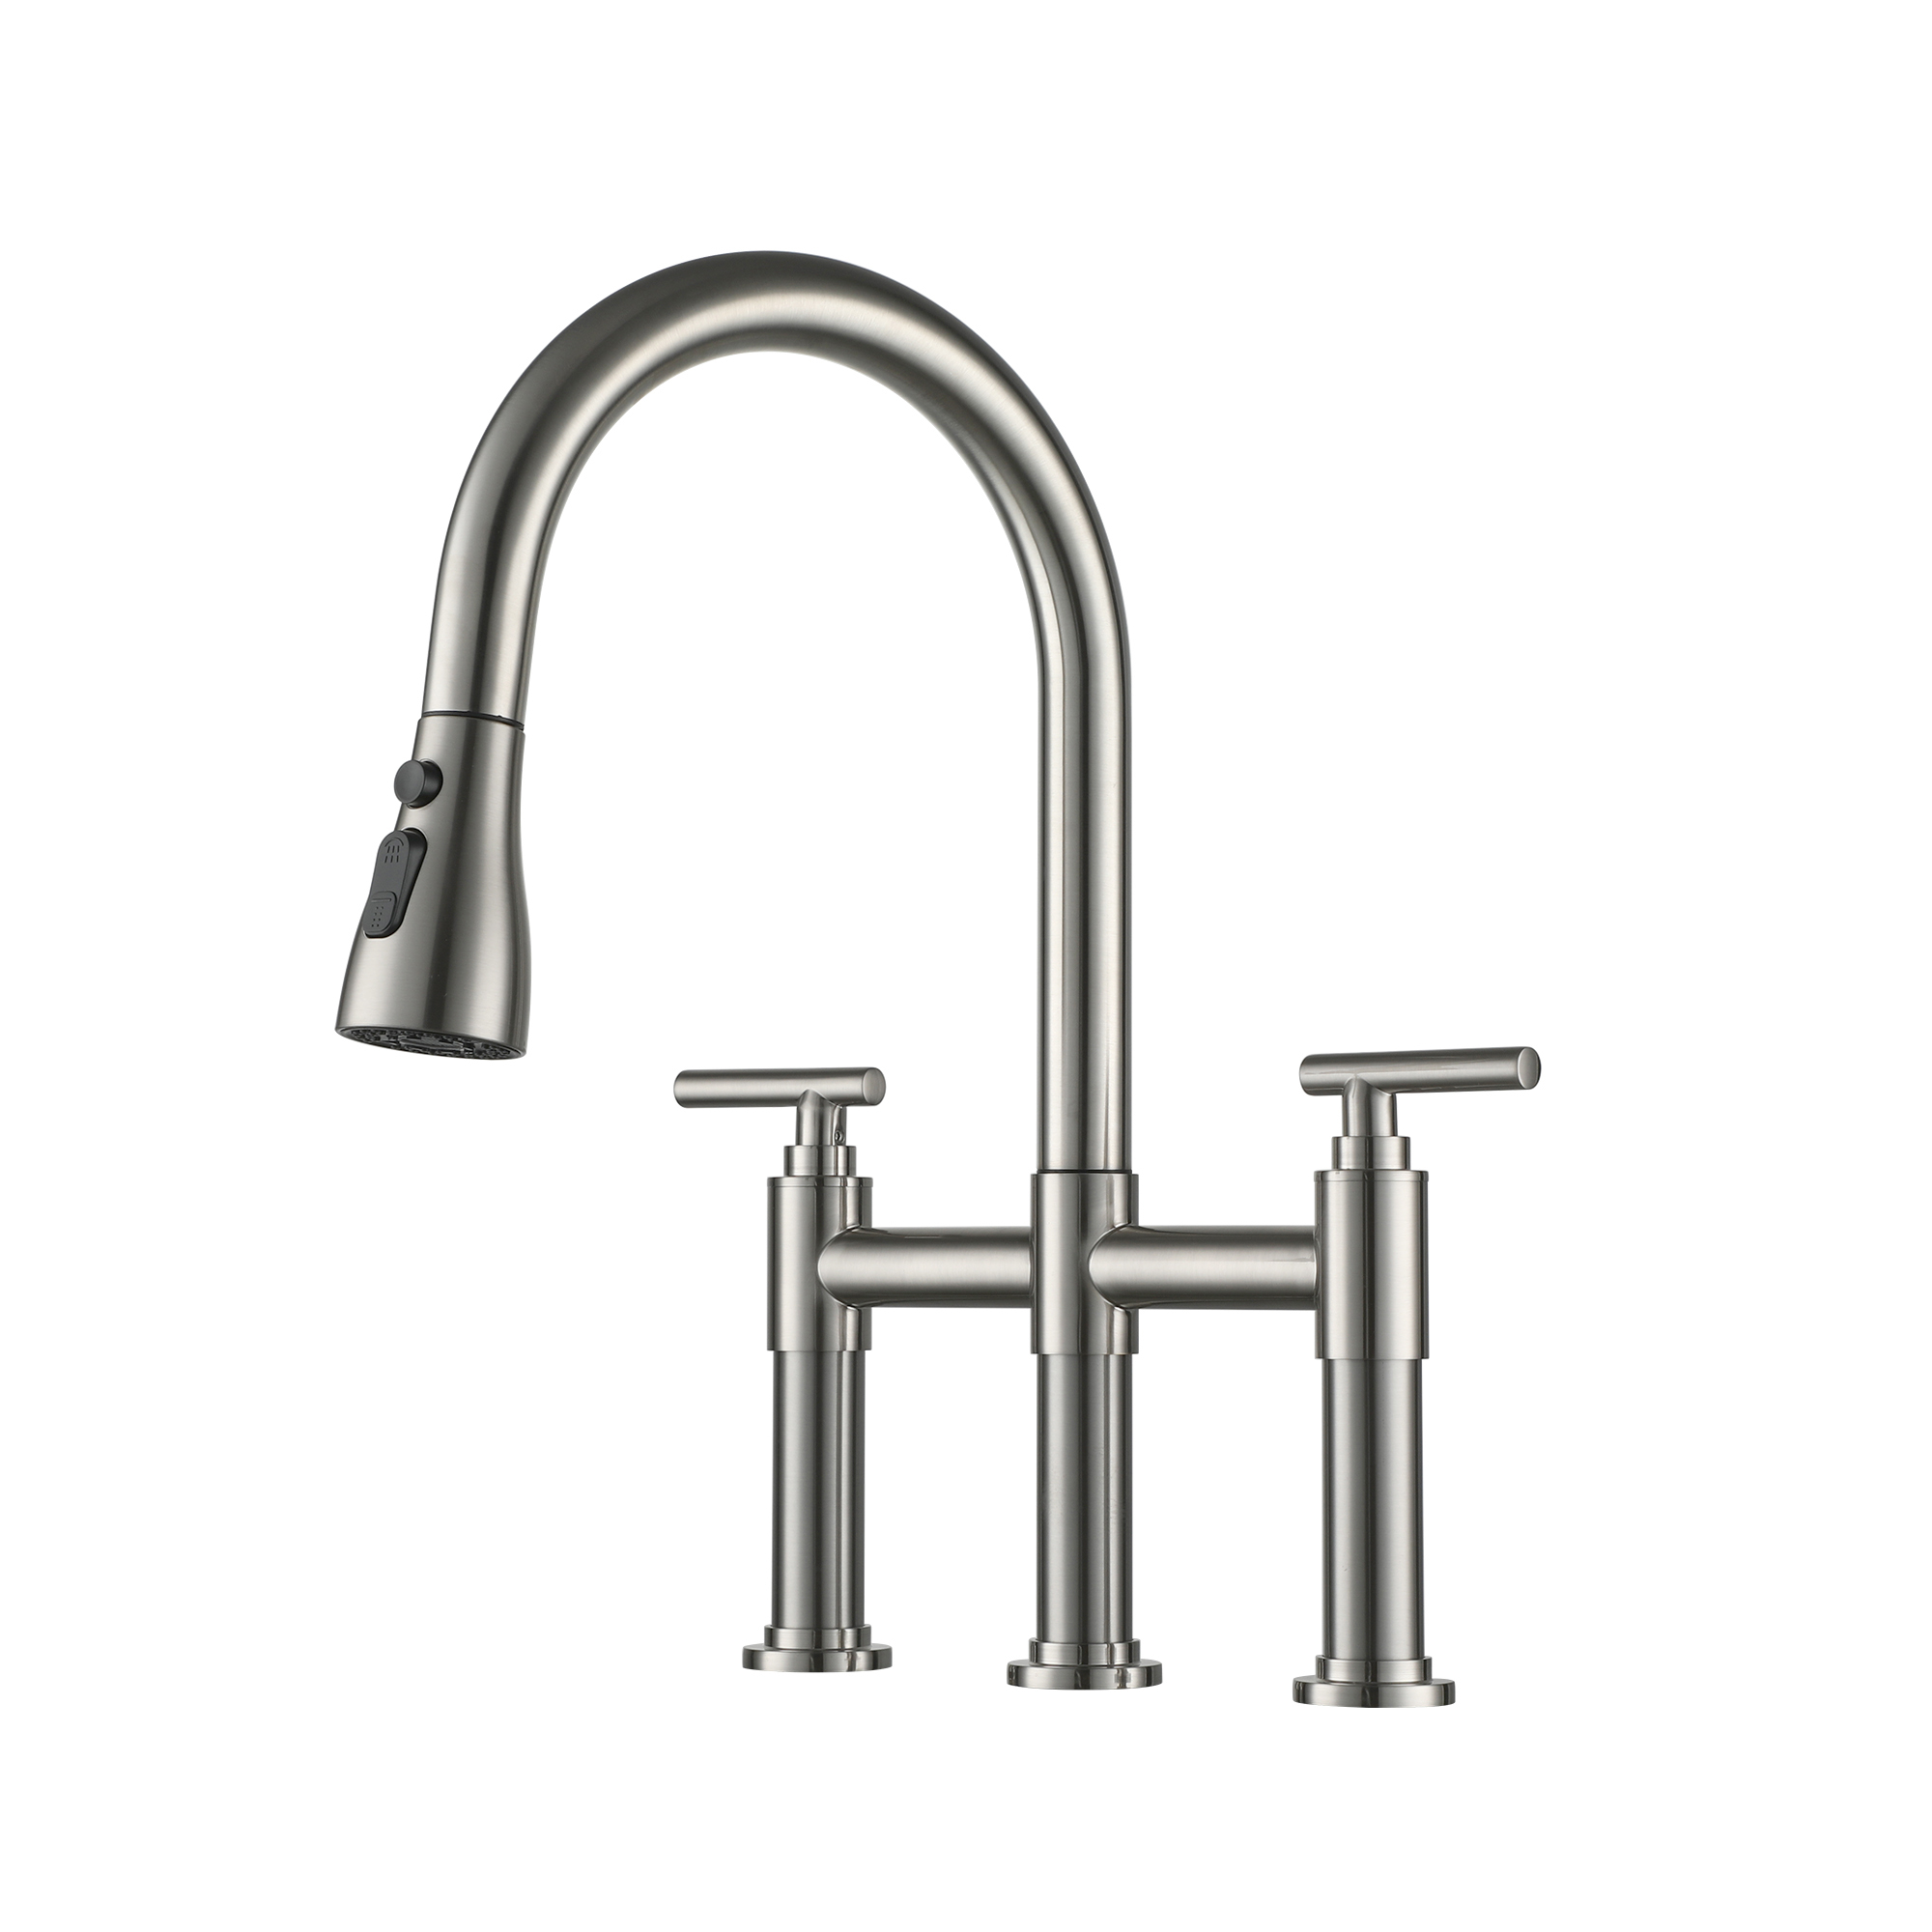 8 in. Widespread 2-Handle High-Arc Bridge Bathroom Faucet in Satin Nickel